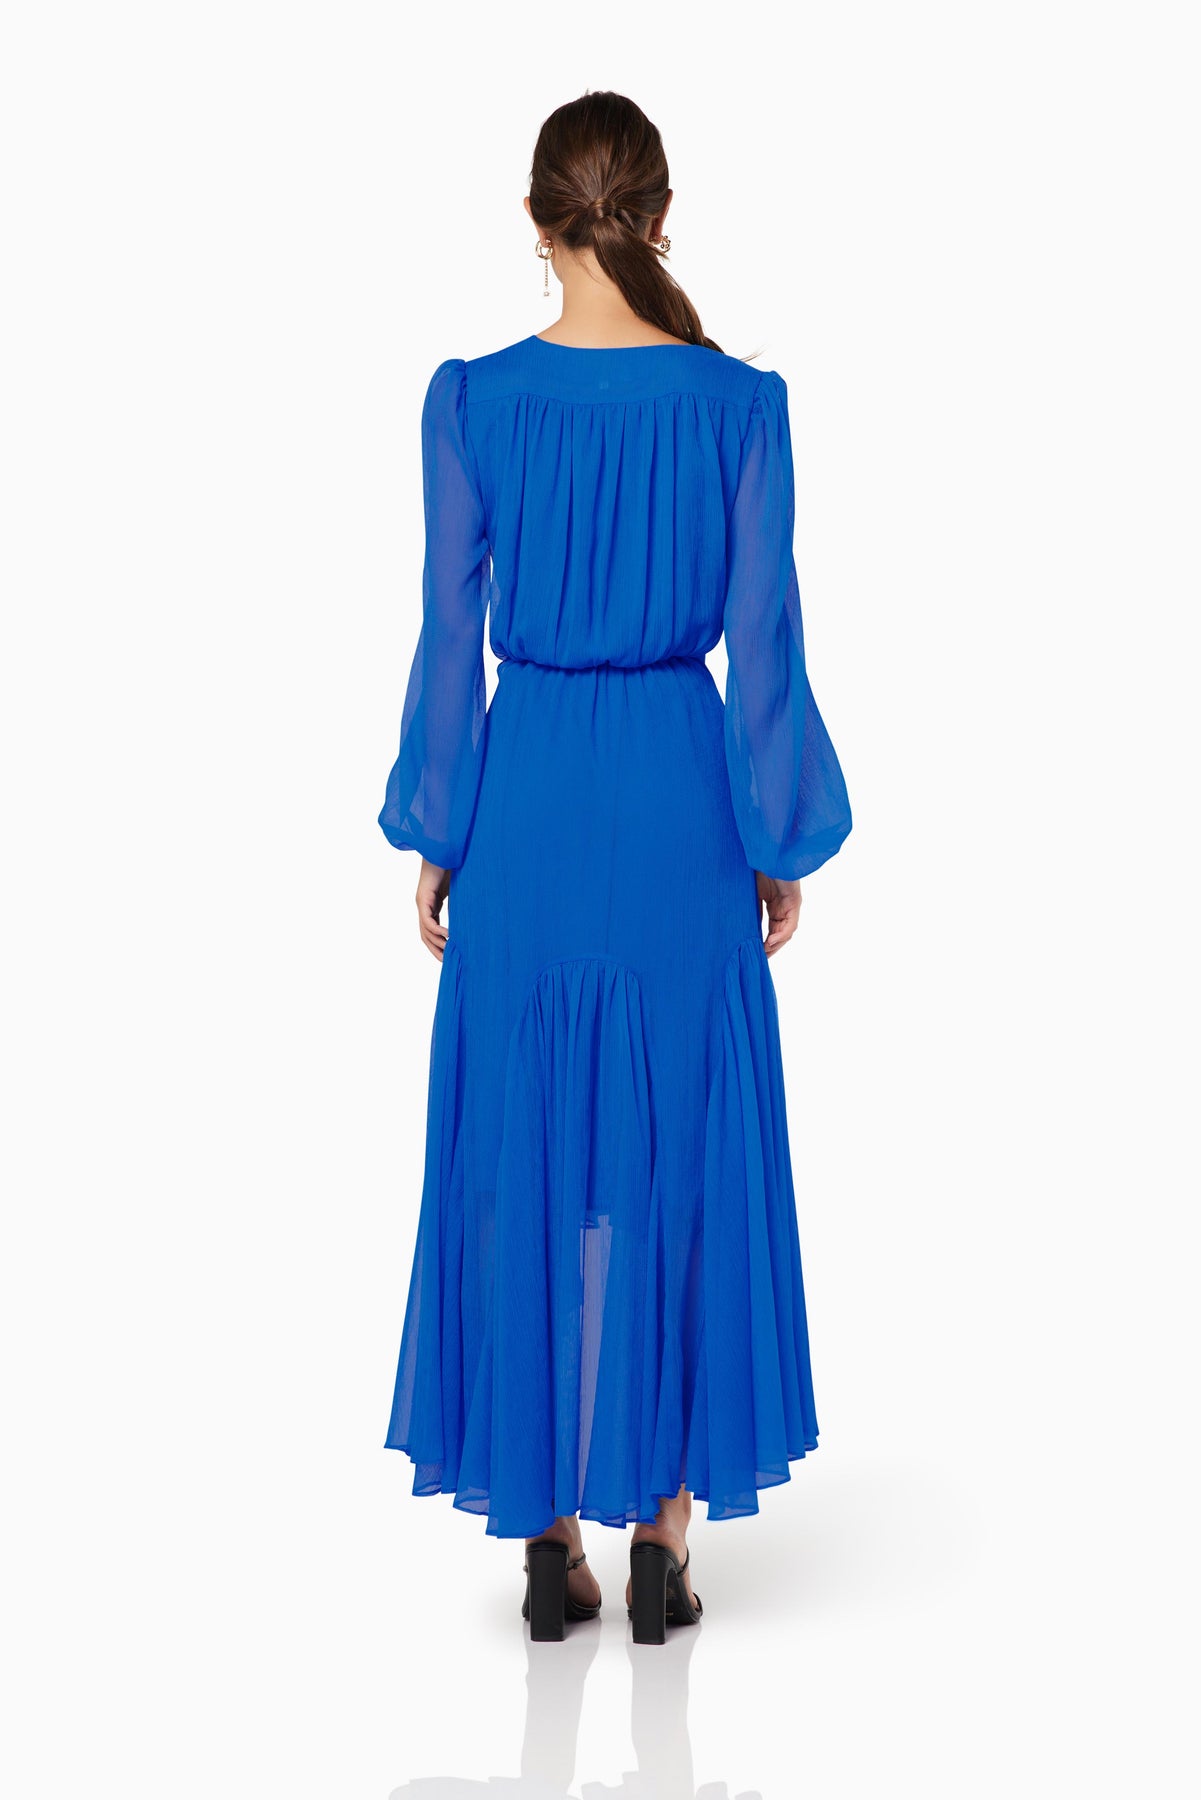 Elliatt Sylliott Dress - Blue – Dress Hire AU